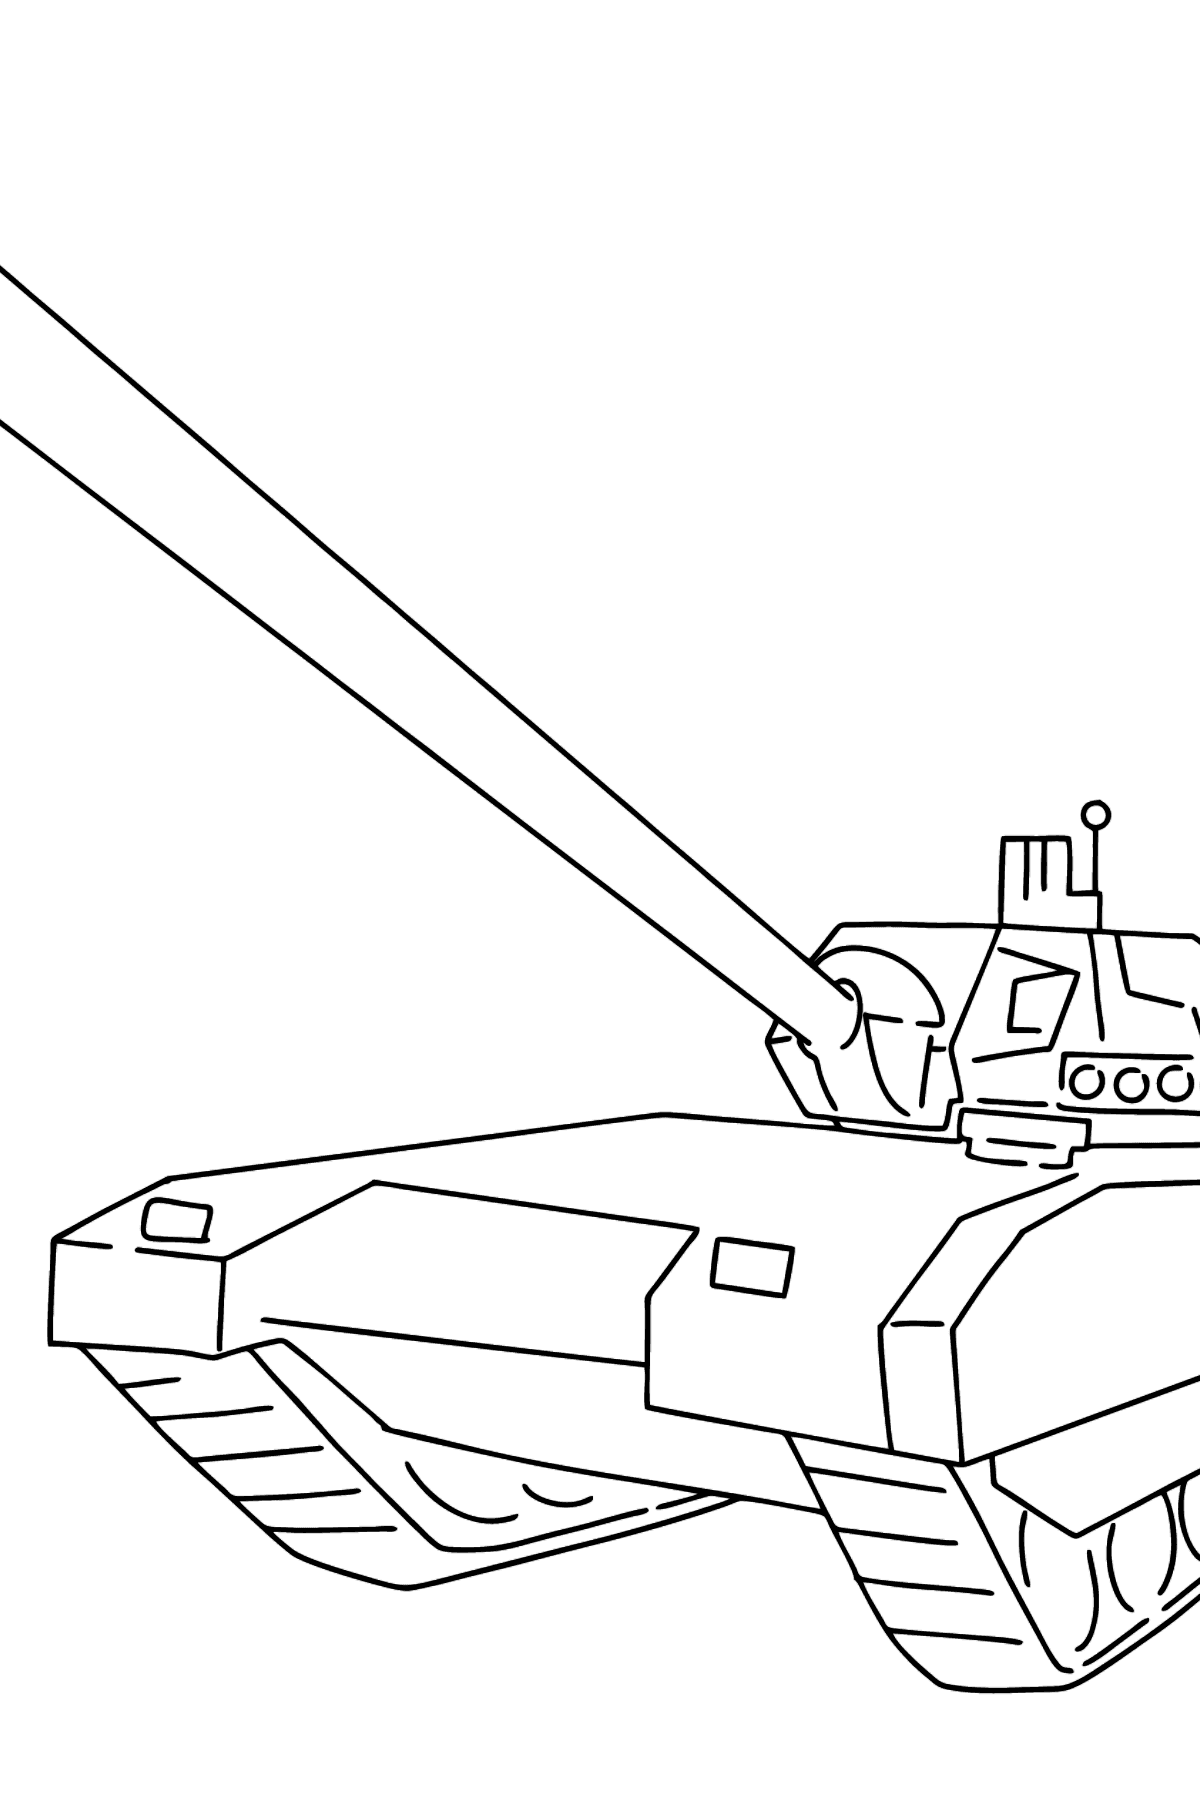 Boyama sayfası Armata tankı - Boyamalar çocuklar için